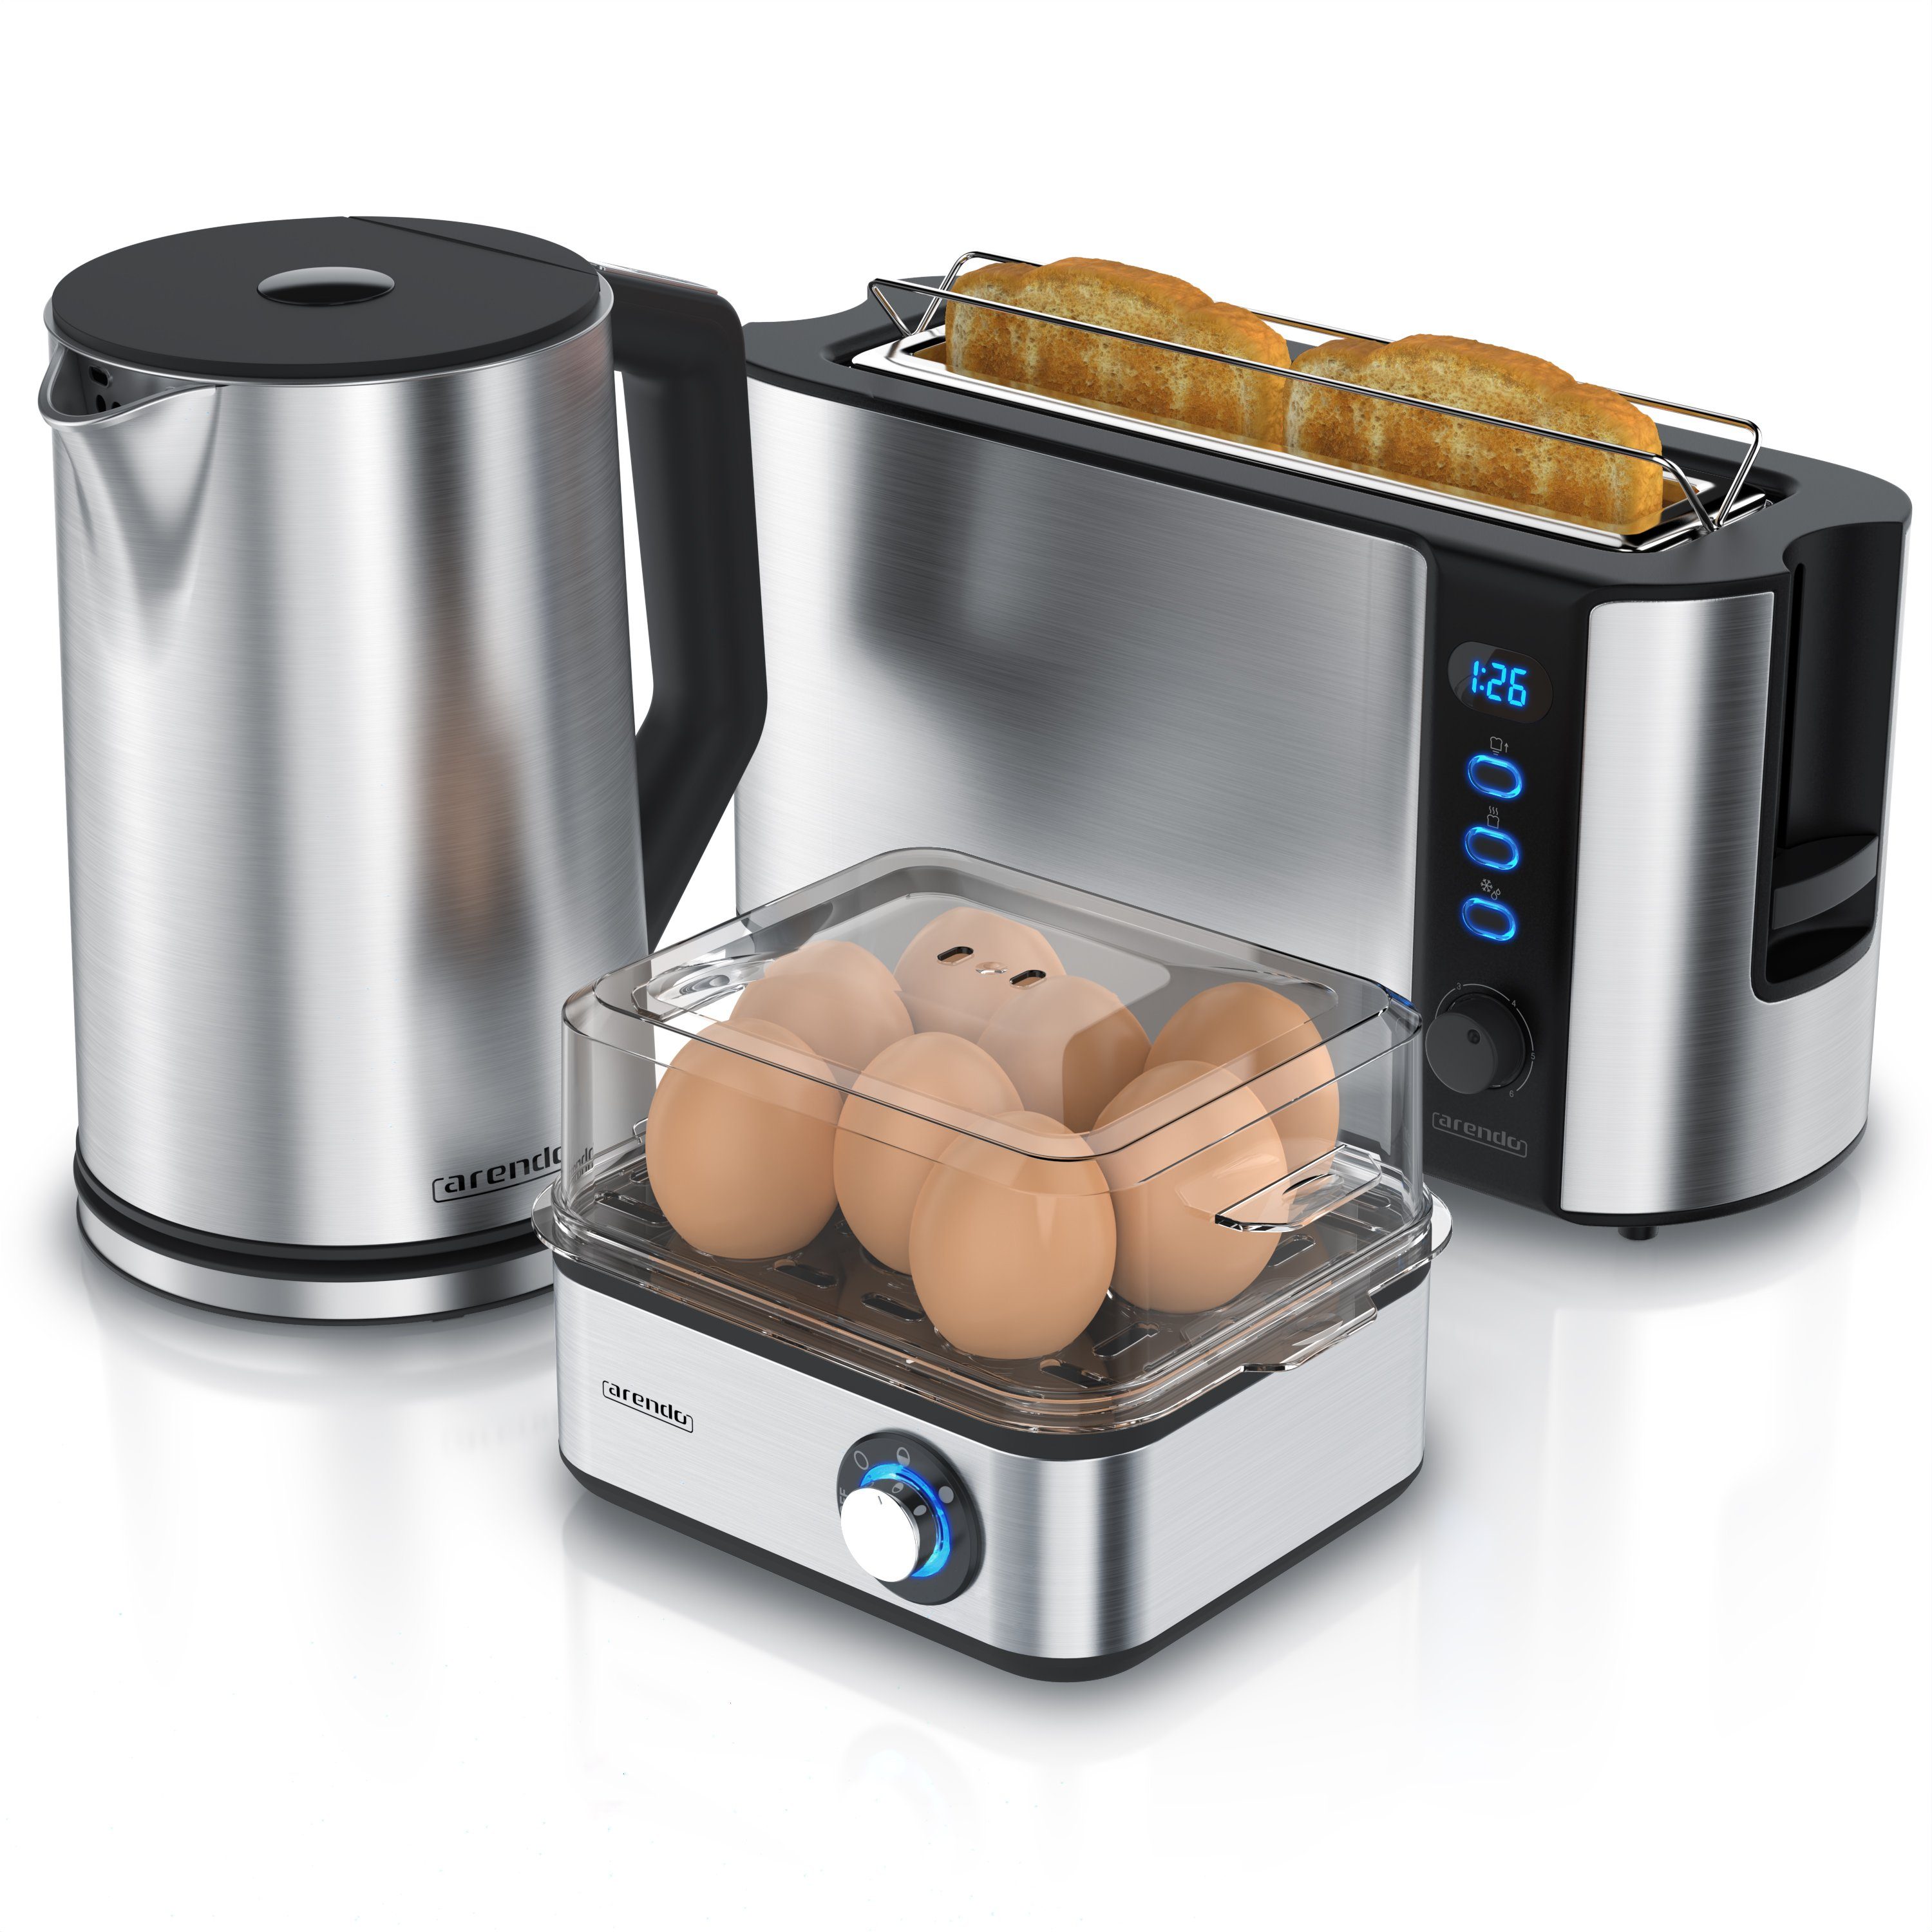 Arendo Frühstücks-Set (3-tlg), Wasserkocher 1,5l / 2-Scheiben Toaster / Eierkocher, Edelstahl, Silber